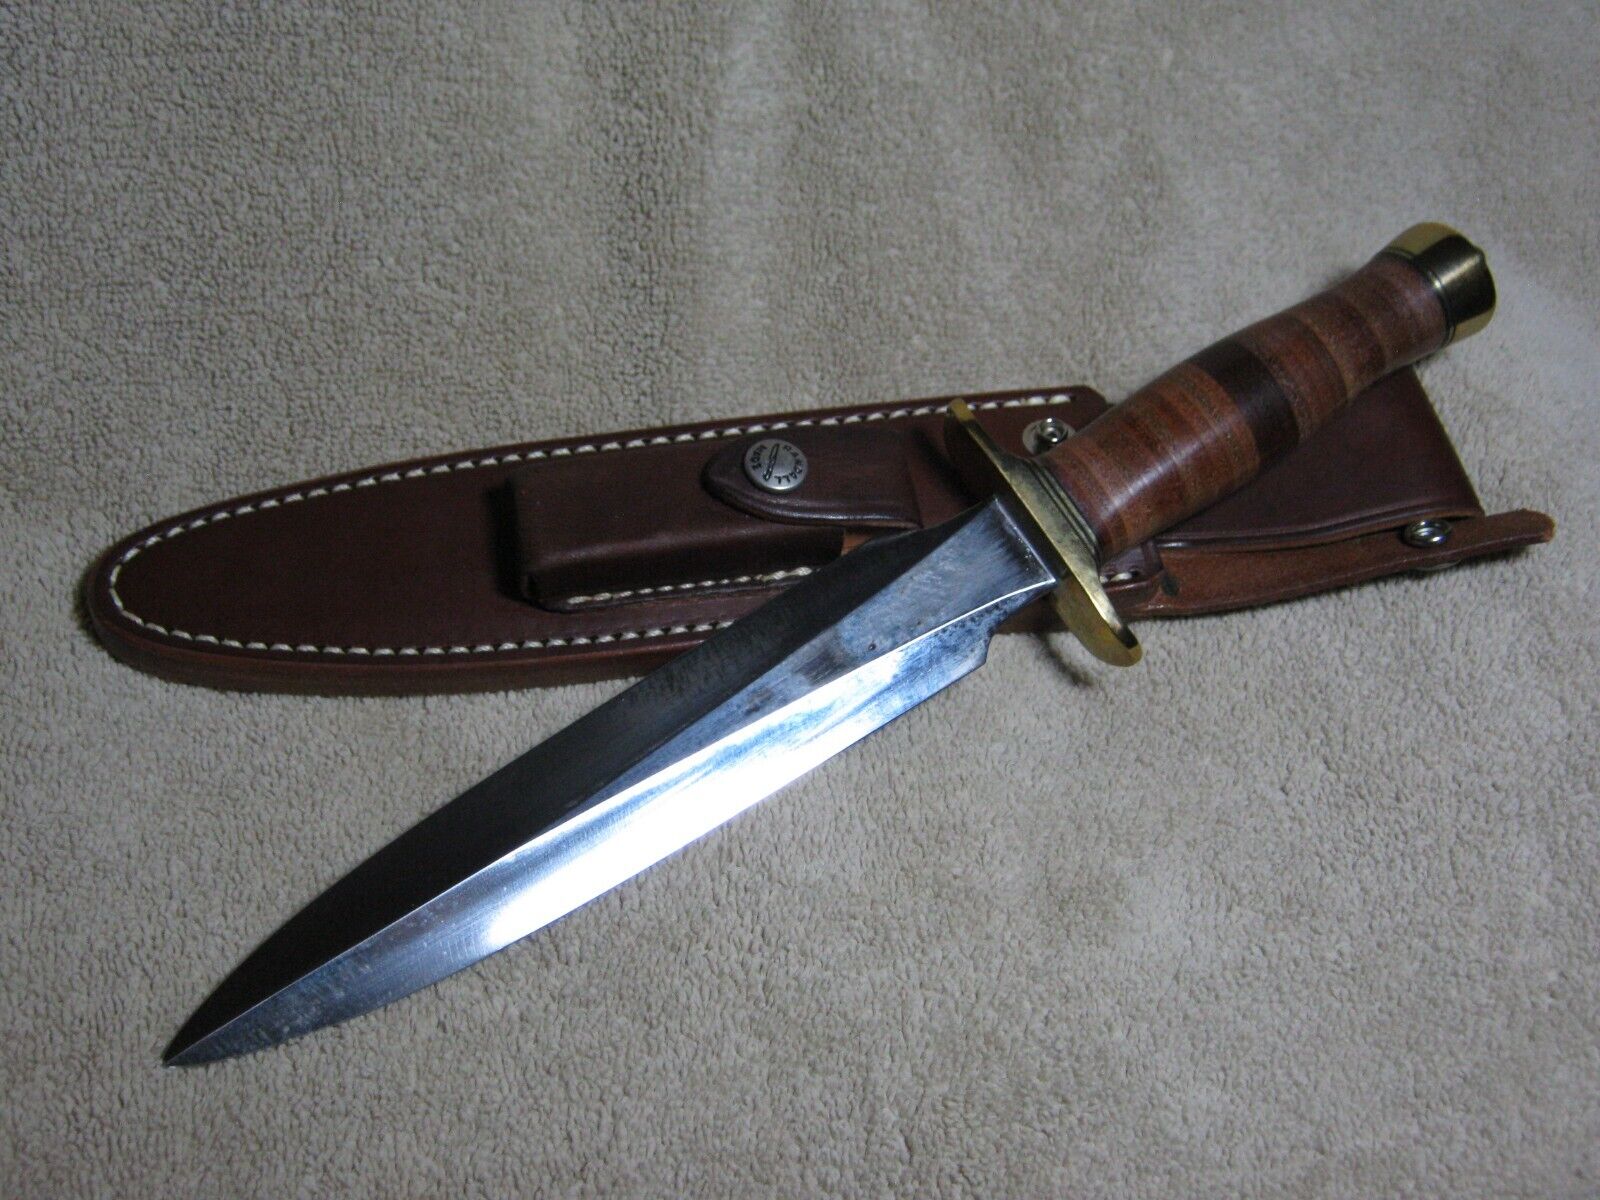 RANDALL KNIFE Model #2, 8" Blade. NEVER USED!